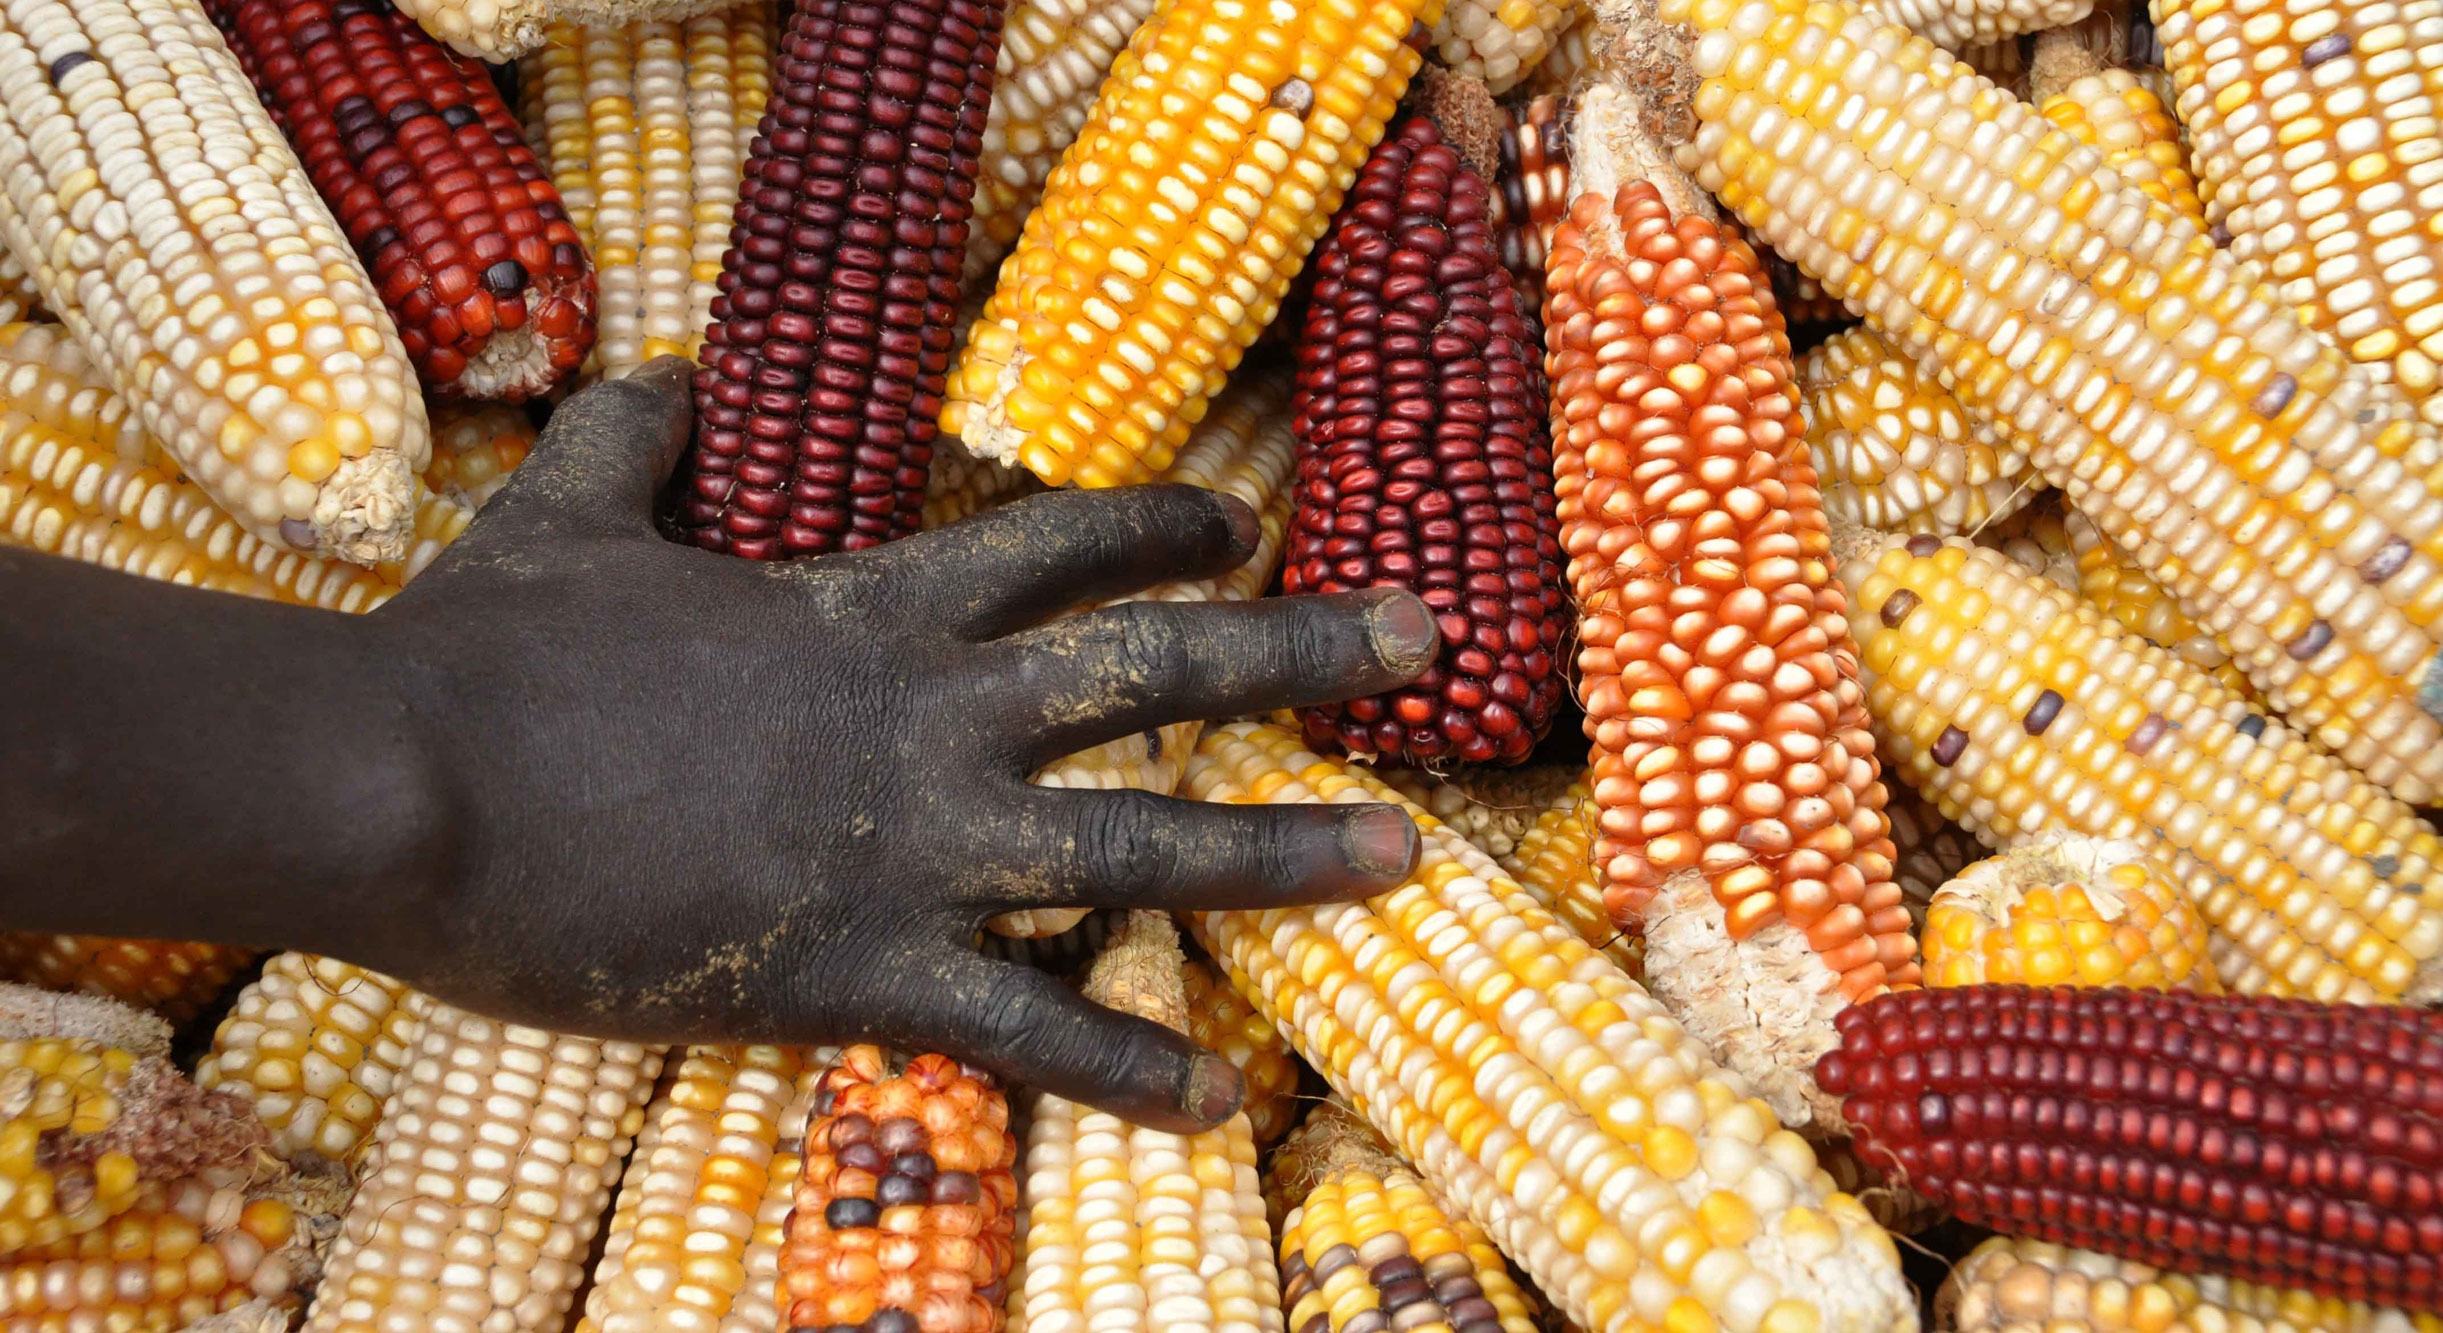 Le maïs est la culture céréalière la plus importante en Afrique subsaharienne.